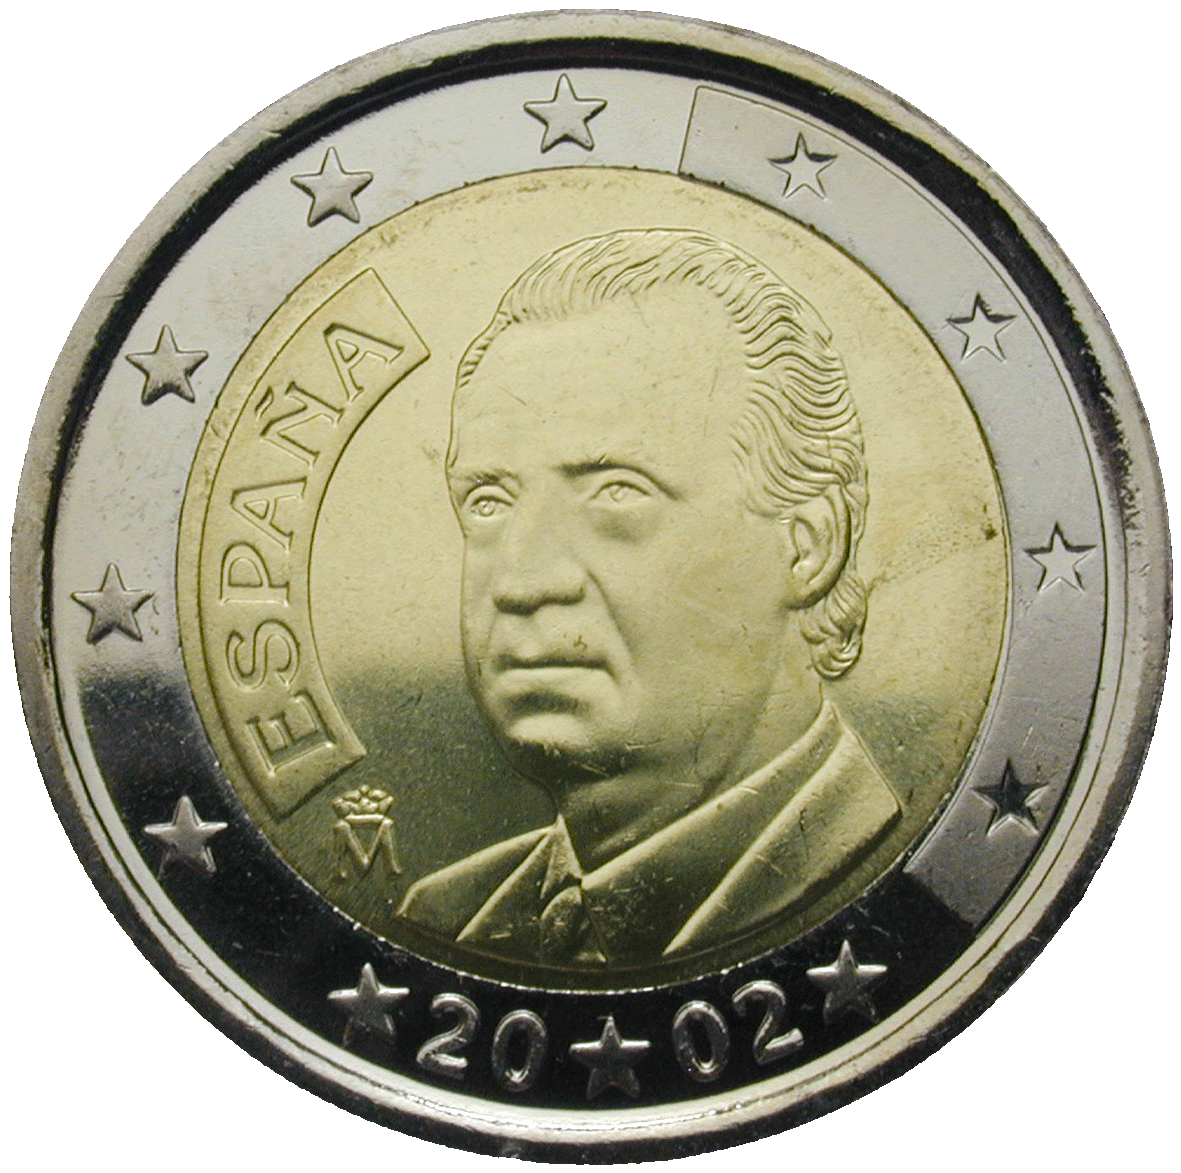 Königreich Spanien, Juan Carlos, 2 Euro 2002 (obverse)